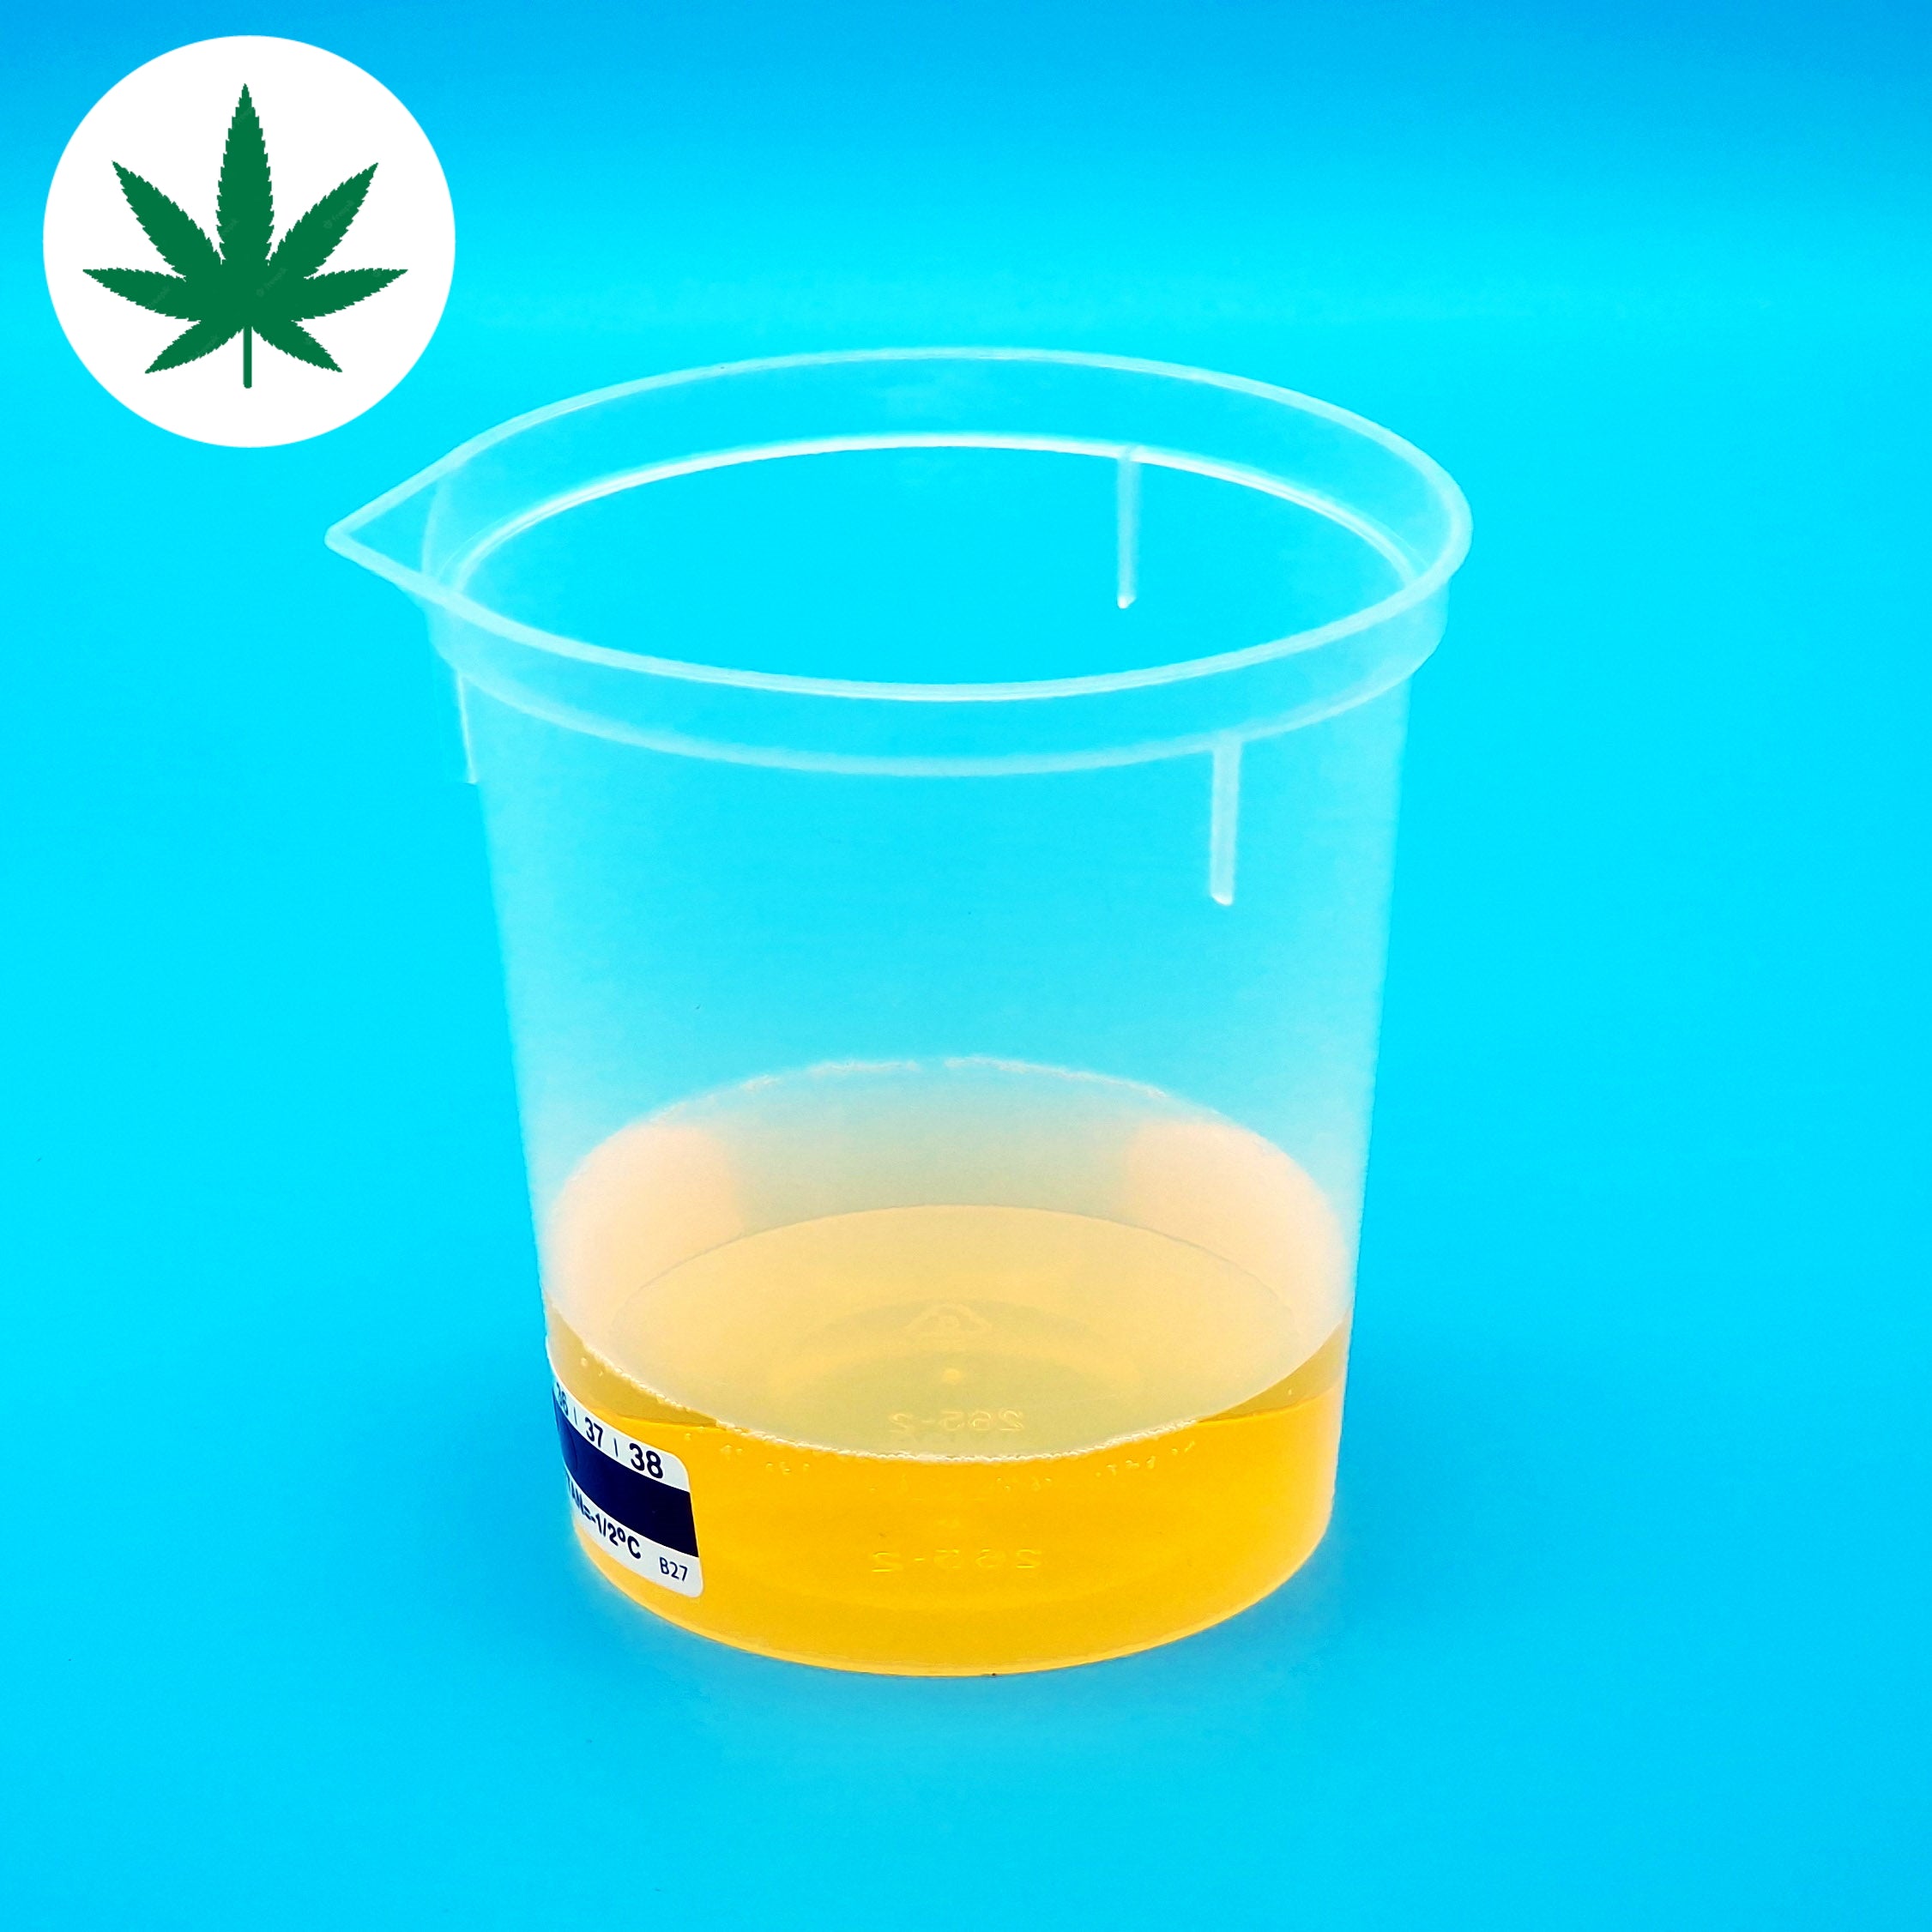 Cannabis Test (Urine)